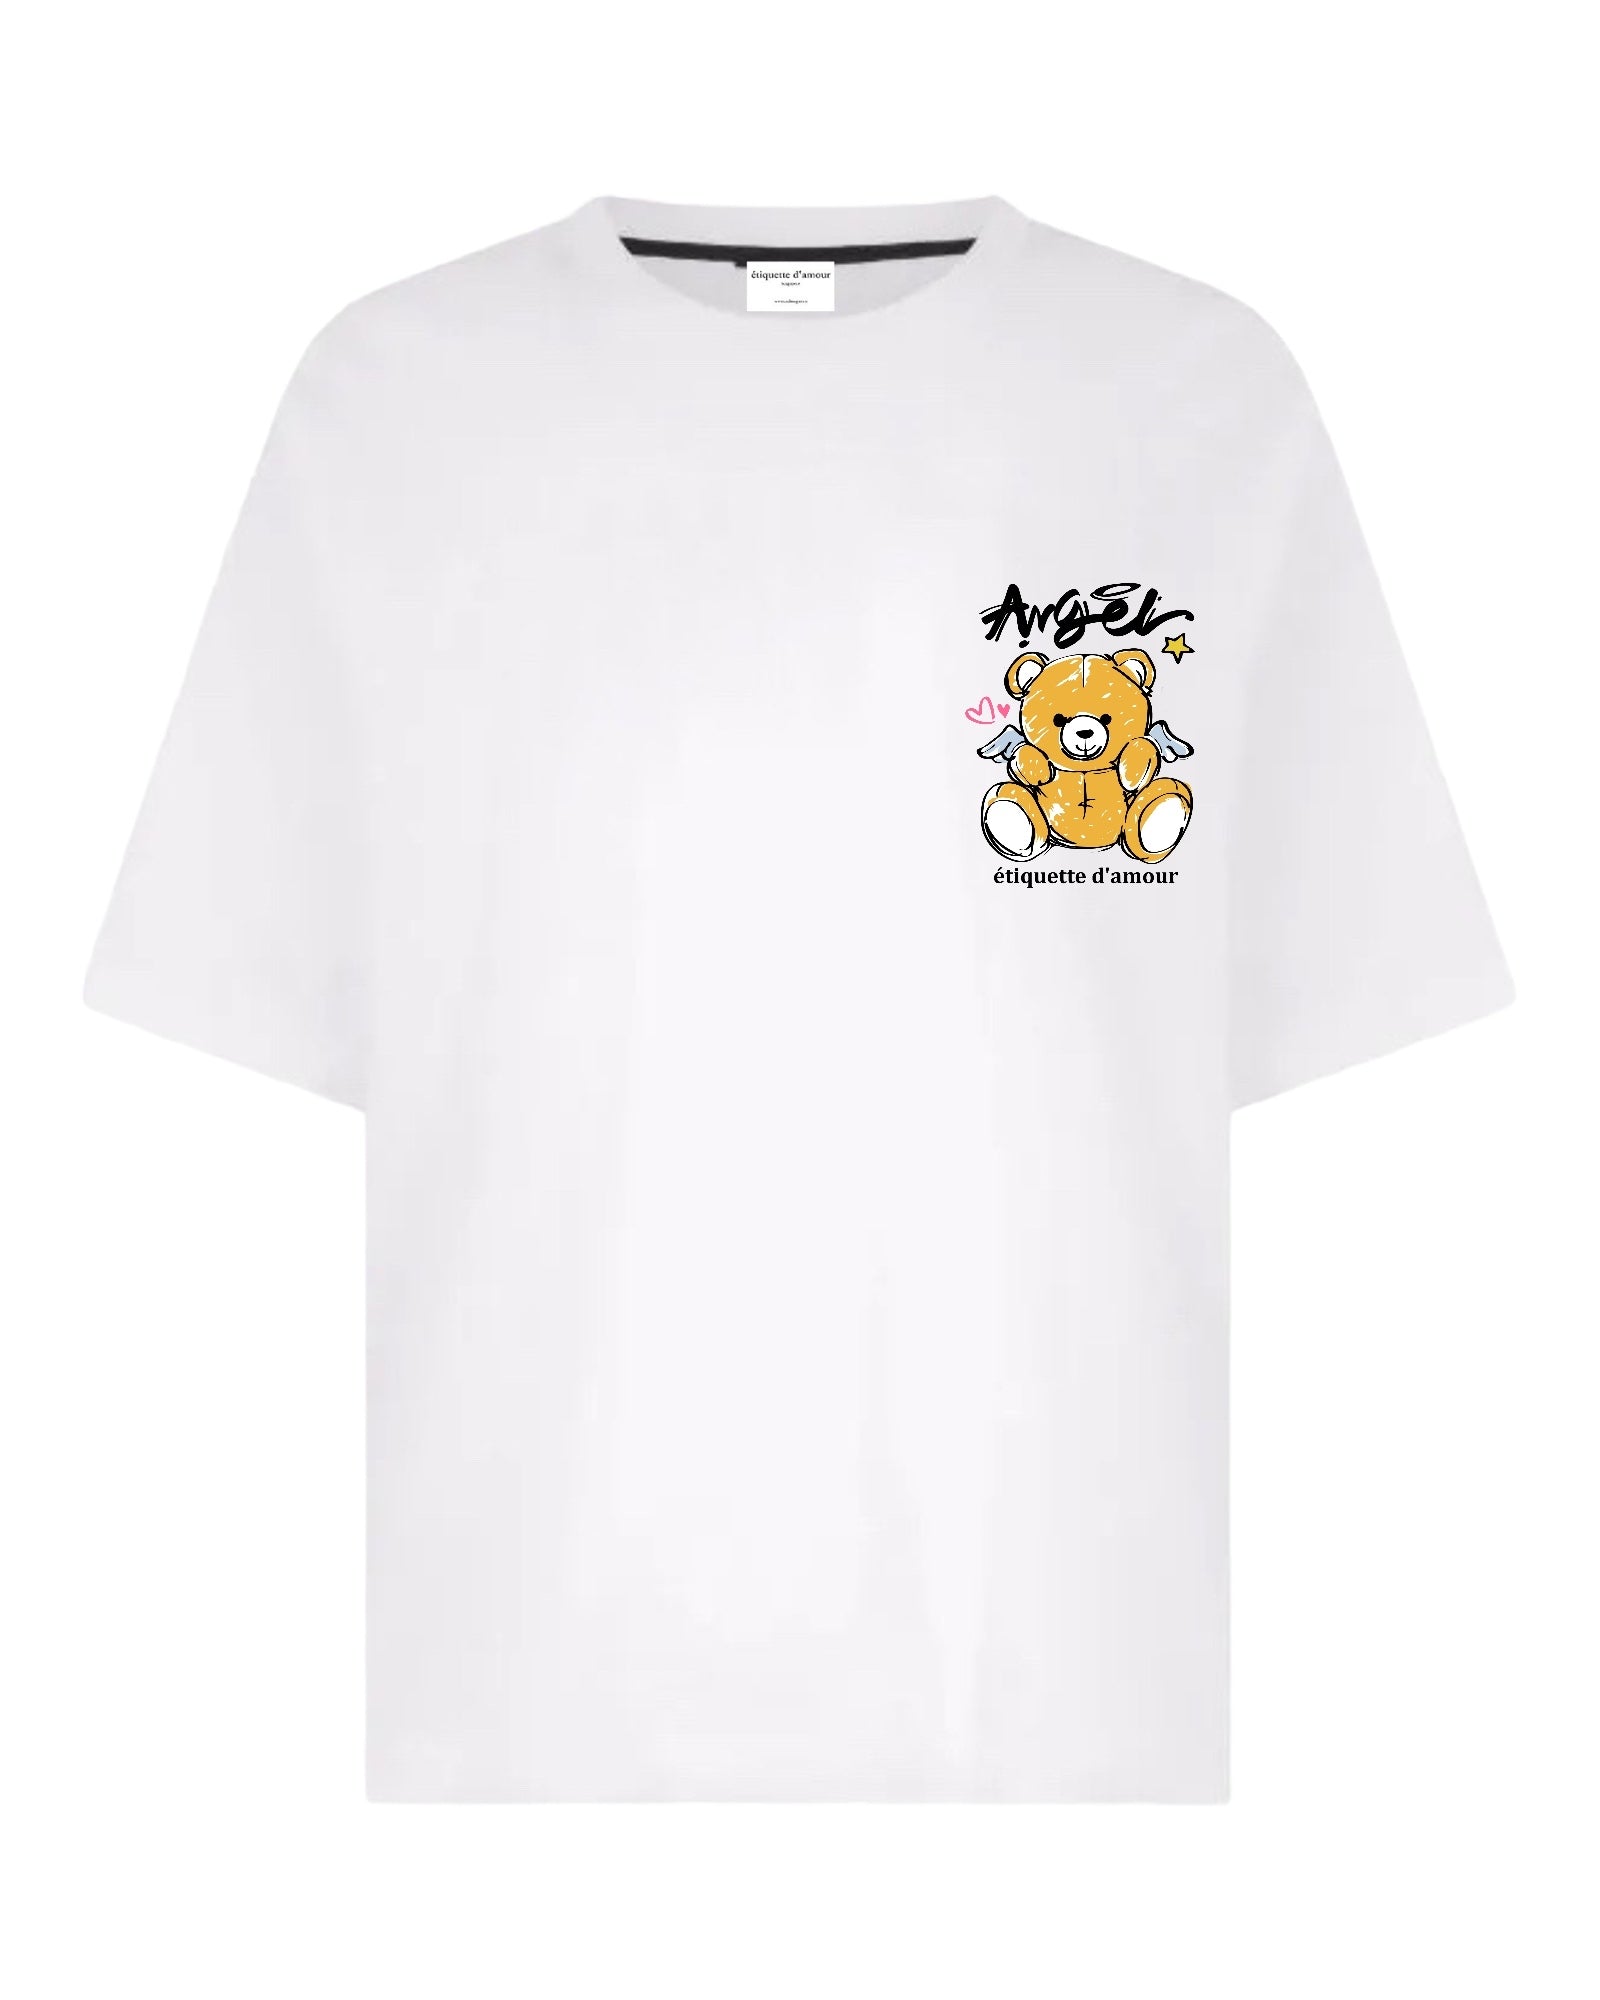 XLuxe T-Shirt #0021